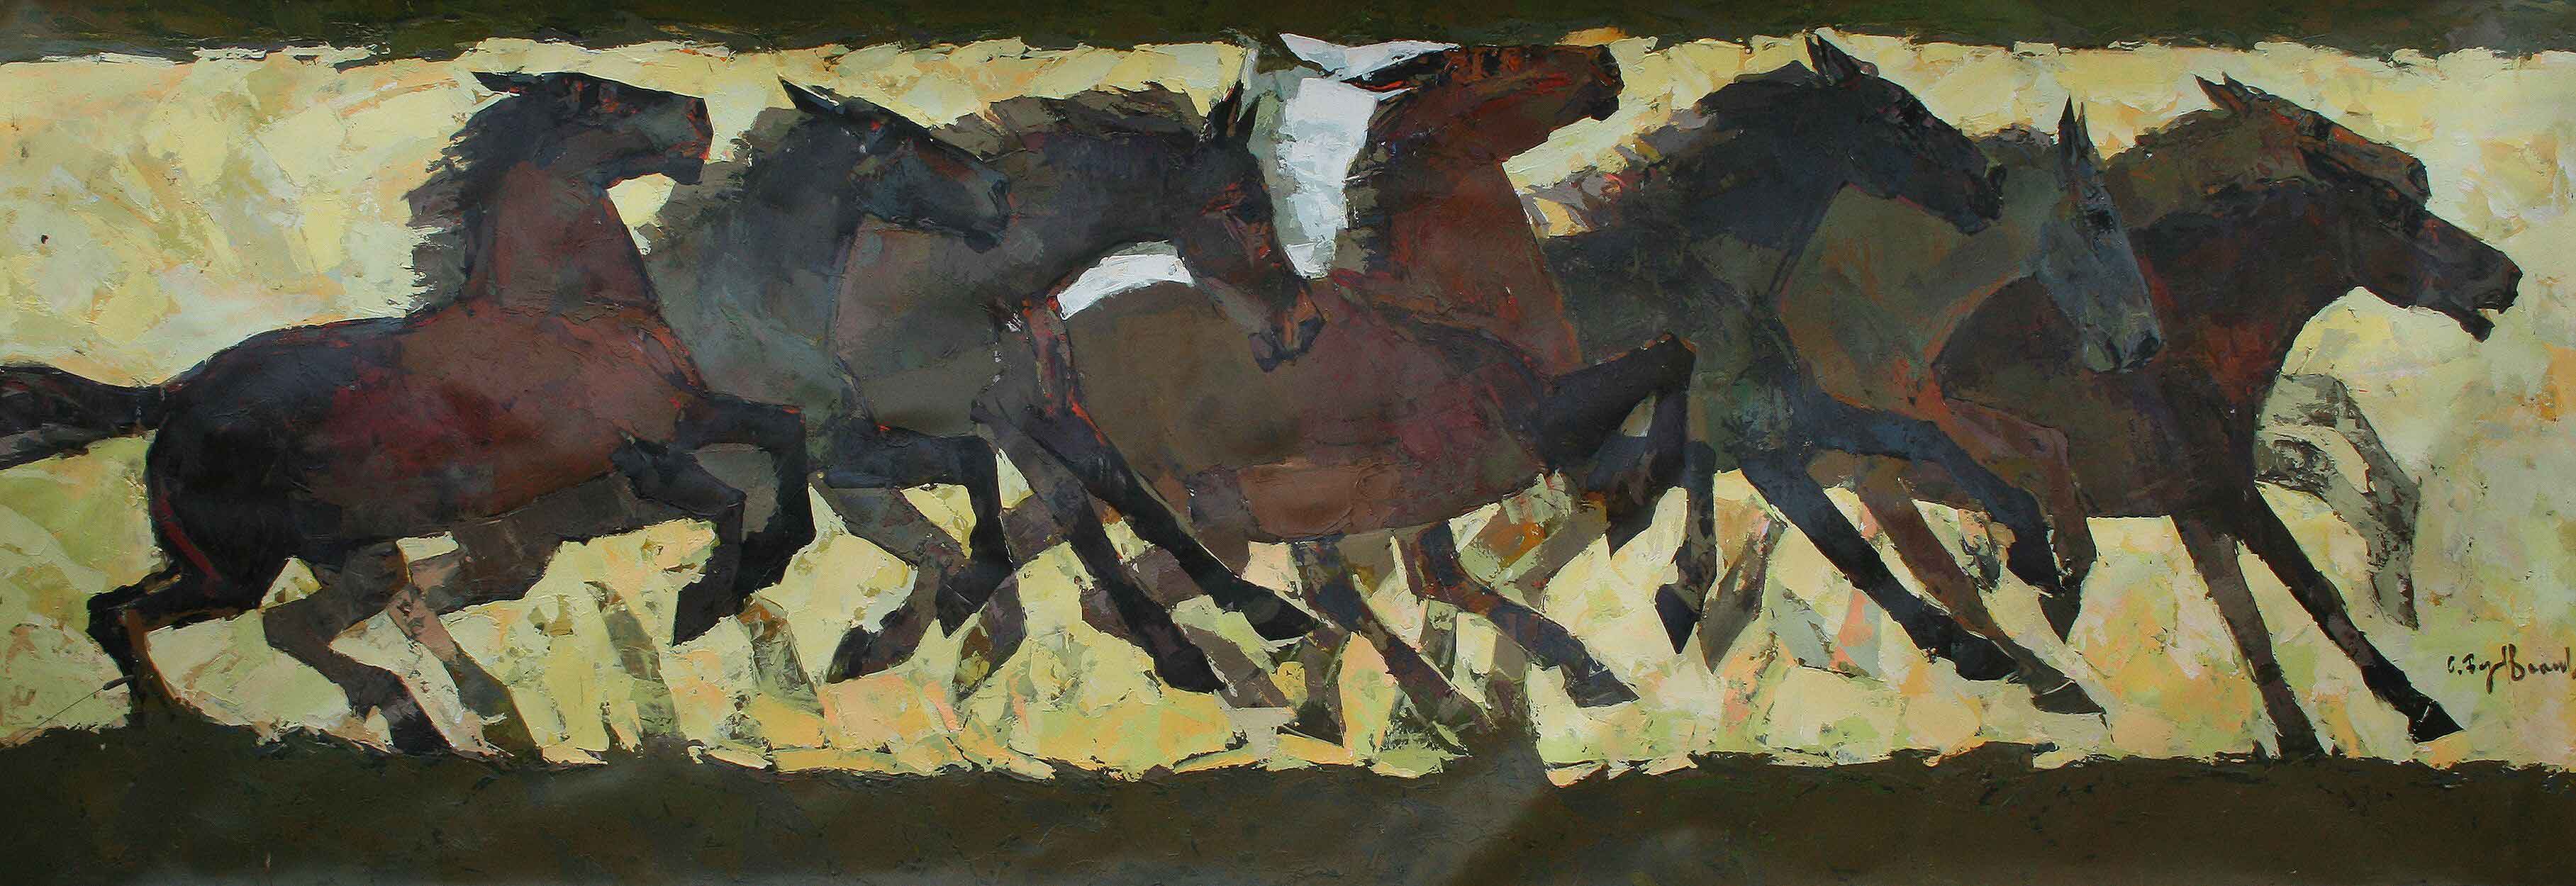 Pintura que representa las diferentes posiciones de un caballo al galope